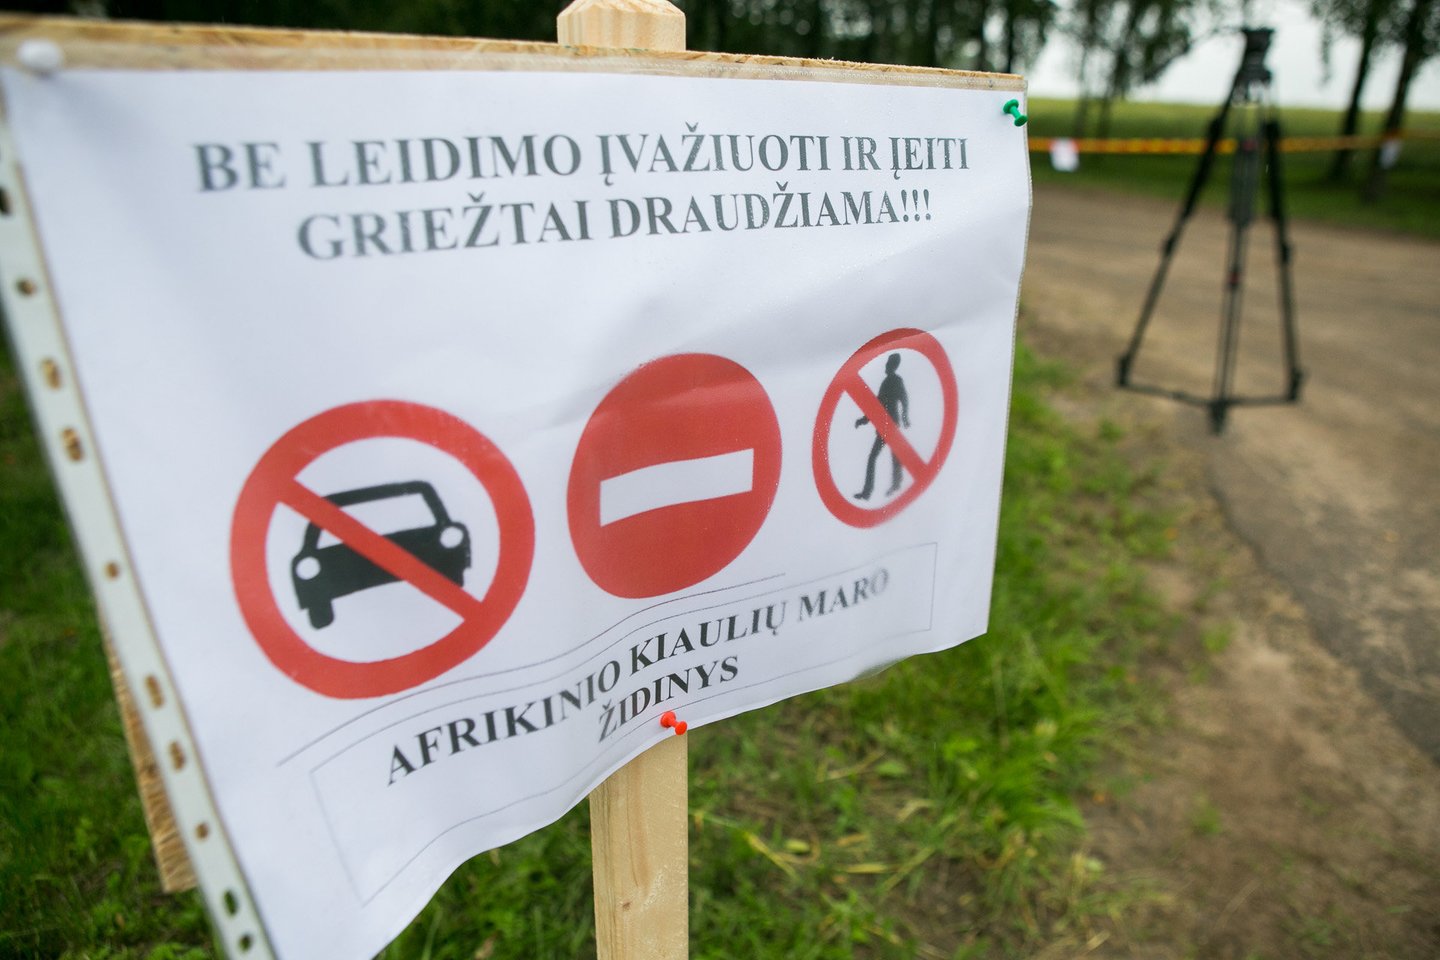 Kaimyninėje Baltarusijoje prasidėjus afrikinio kiaulių maro epidemijai Lietuvoje buvo minčių nutiesti tvorą palei visą pasienį. Bet tai nebuvo padaryta. Užtat danai šitaip nusprendė saugotis nuo vokiškų šernų.<br>G.Bitvinsko nuotr.